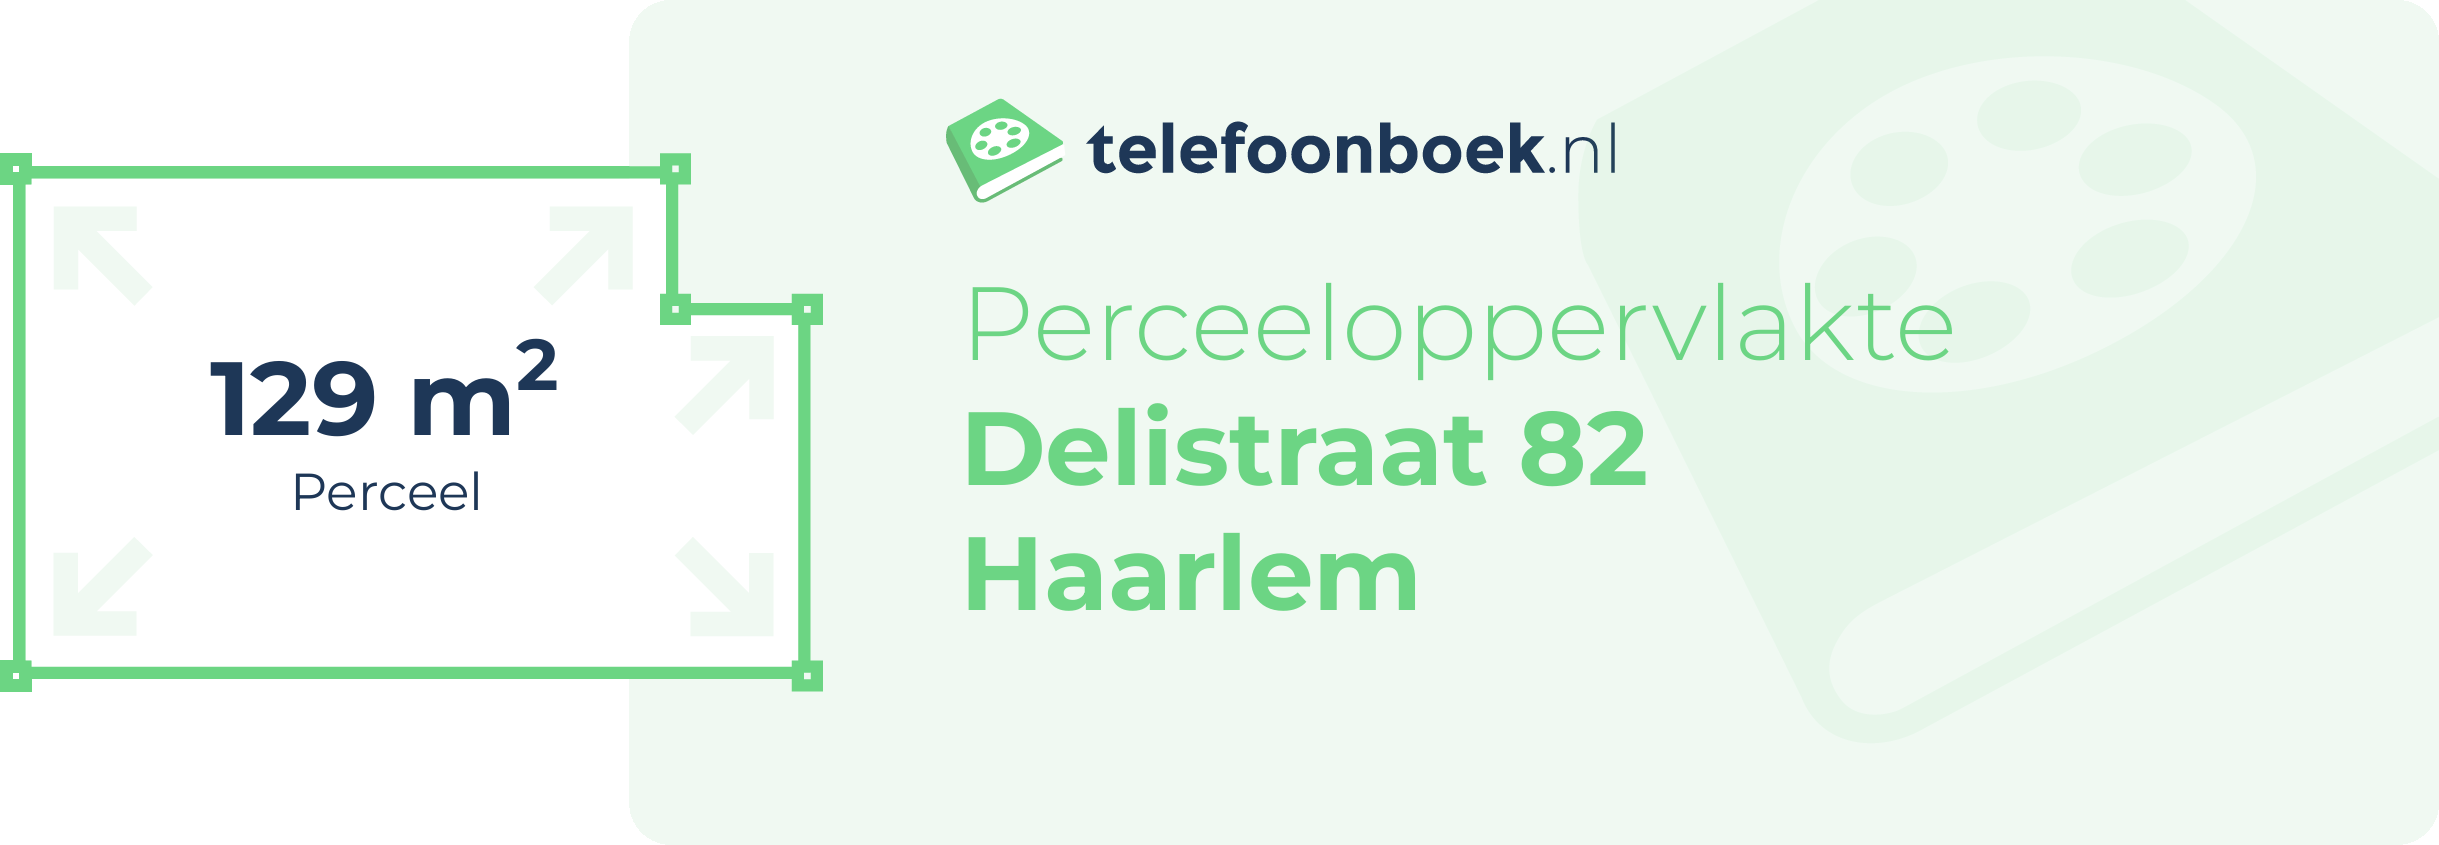 Perceeloppervlakte Delistraat 82 Haarlem